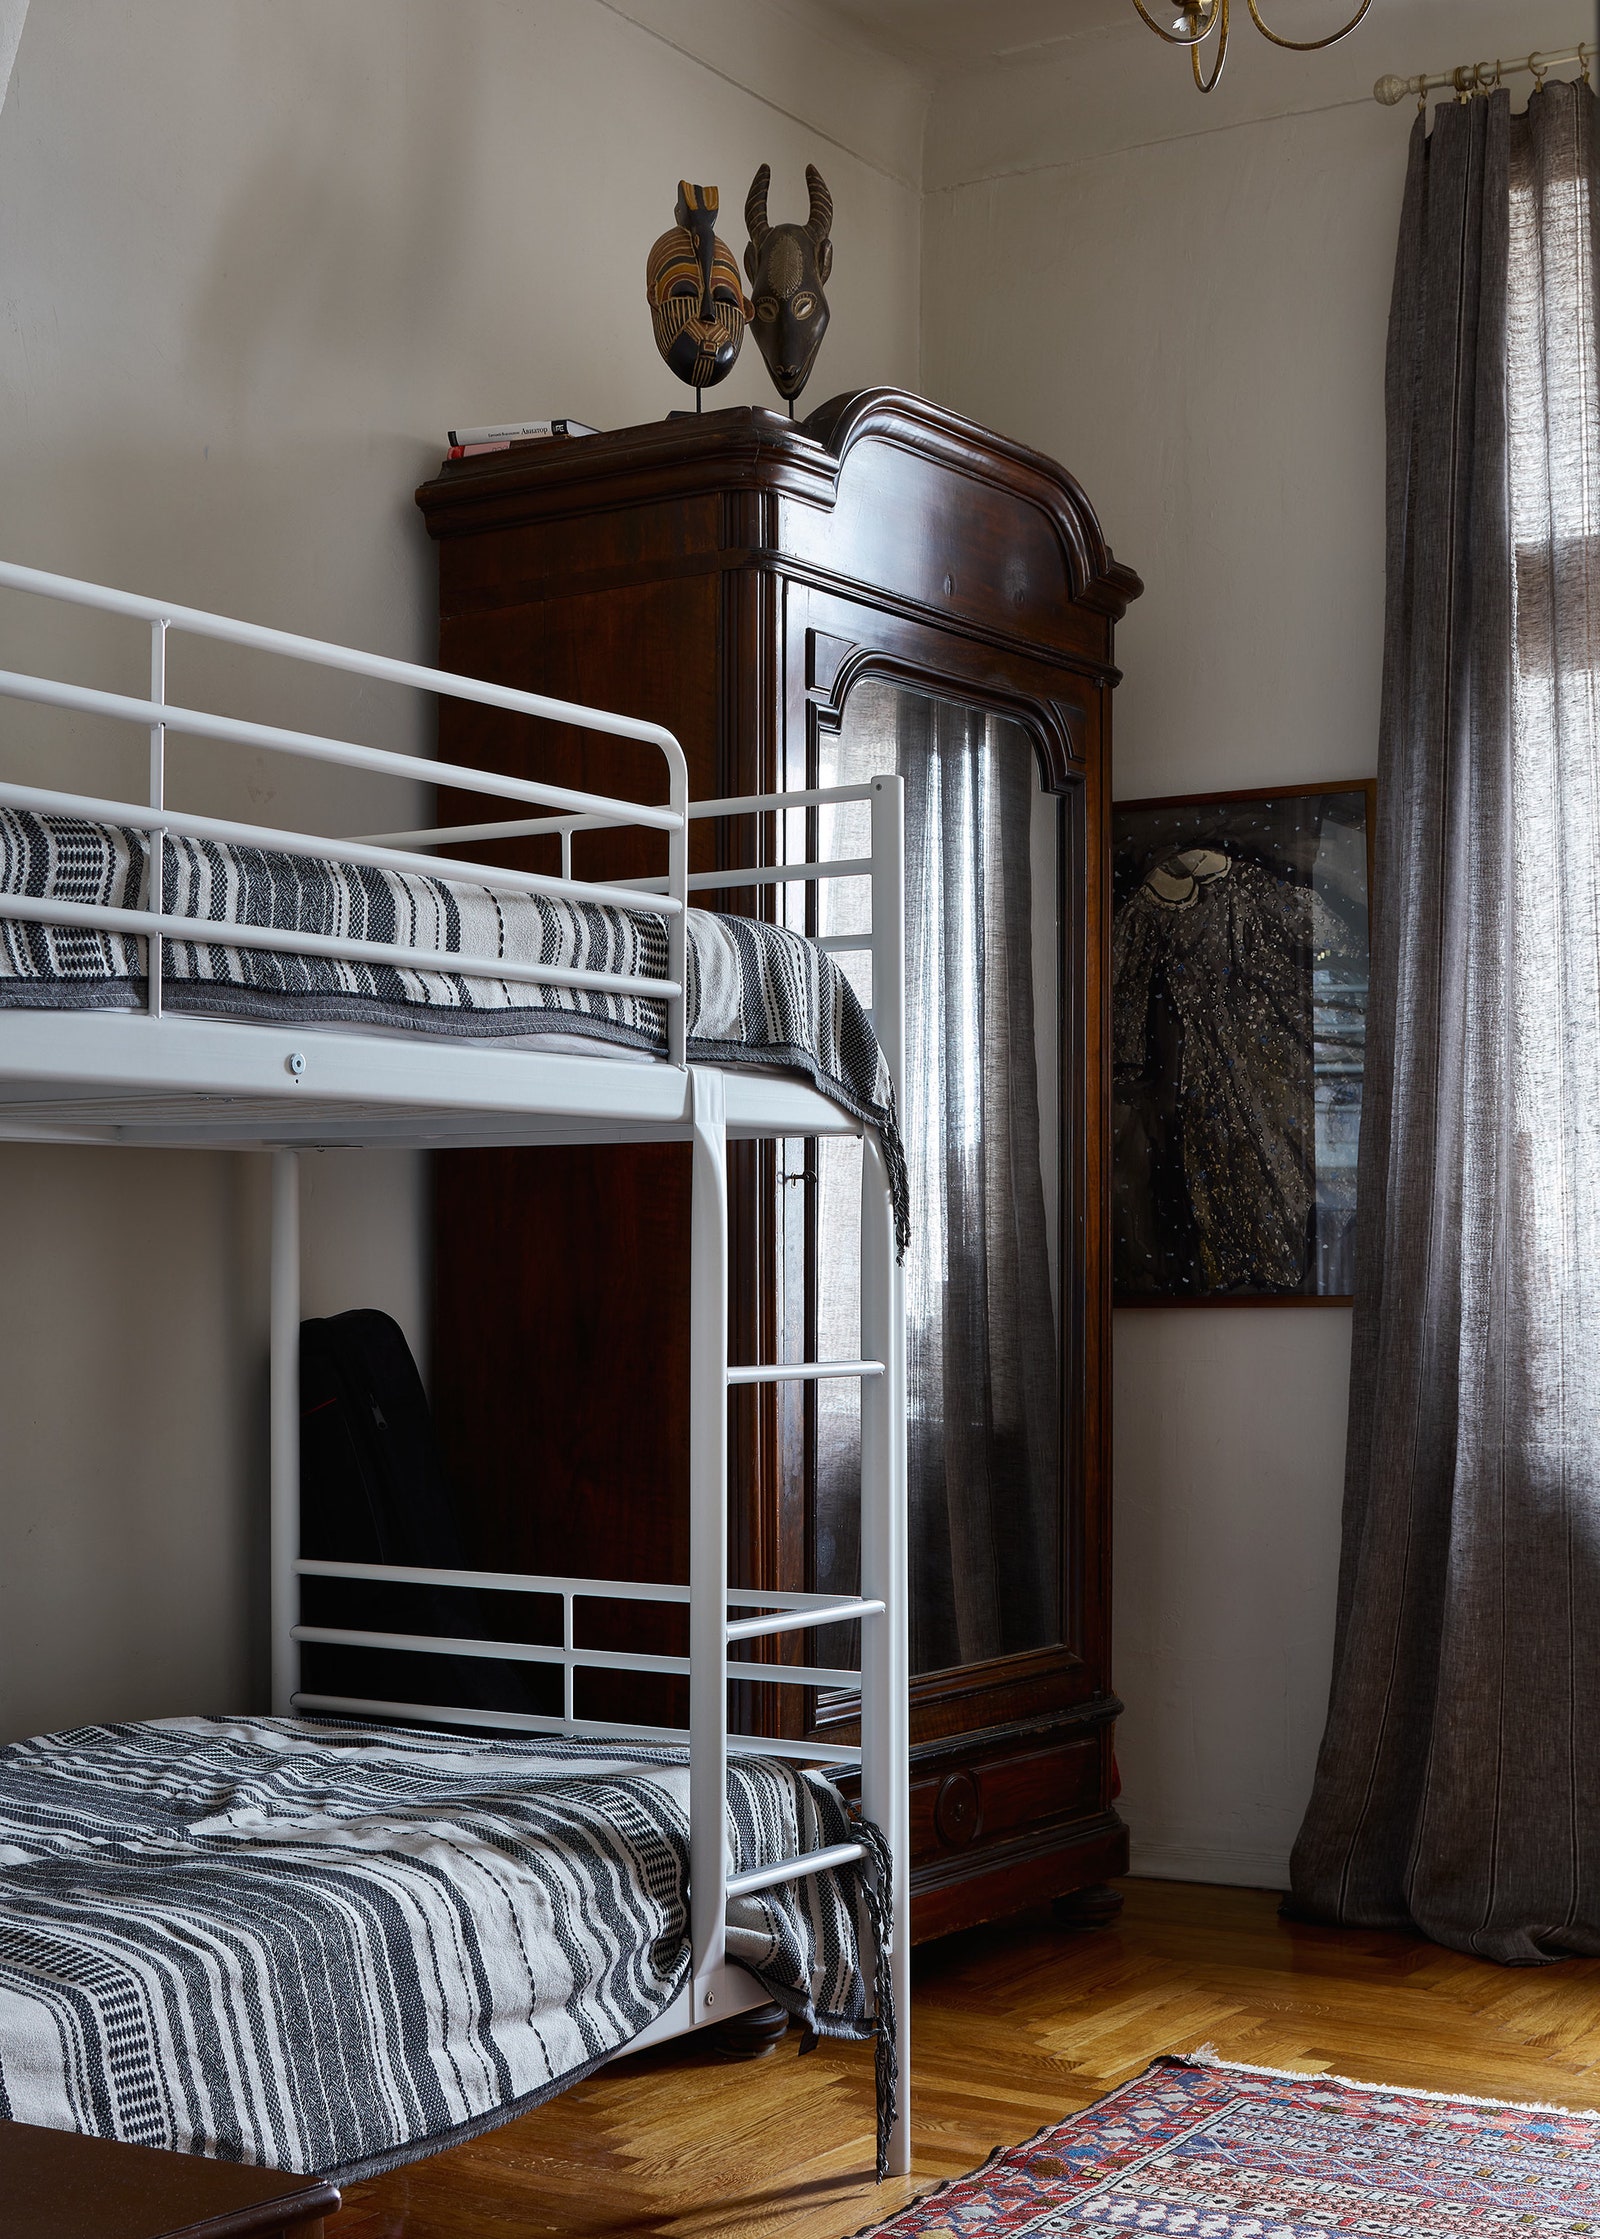 Детская комната. Шкаф Mobeledom люстра привезена из Ареццо кровать IKEA акварель Екатерины Рожковой.